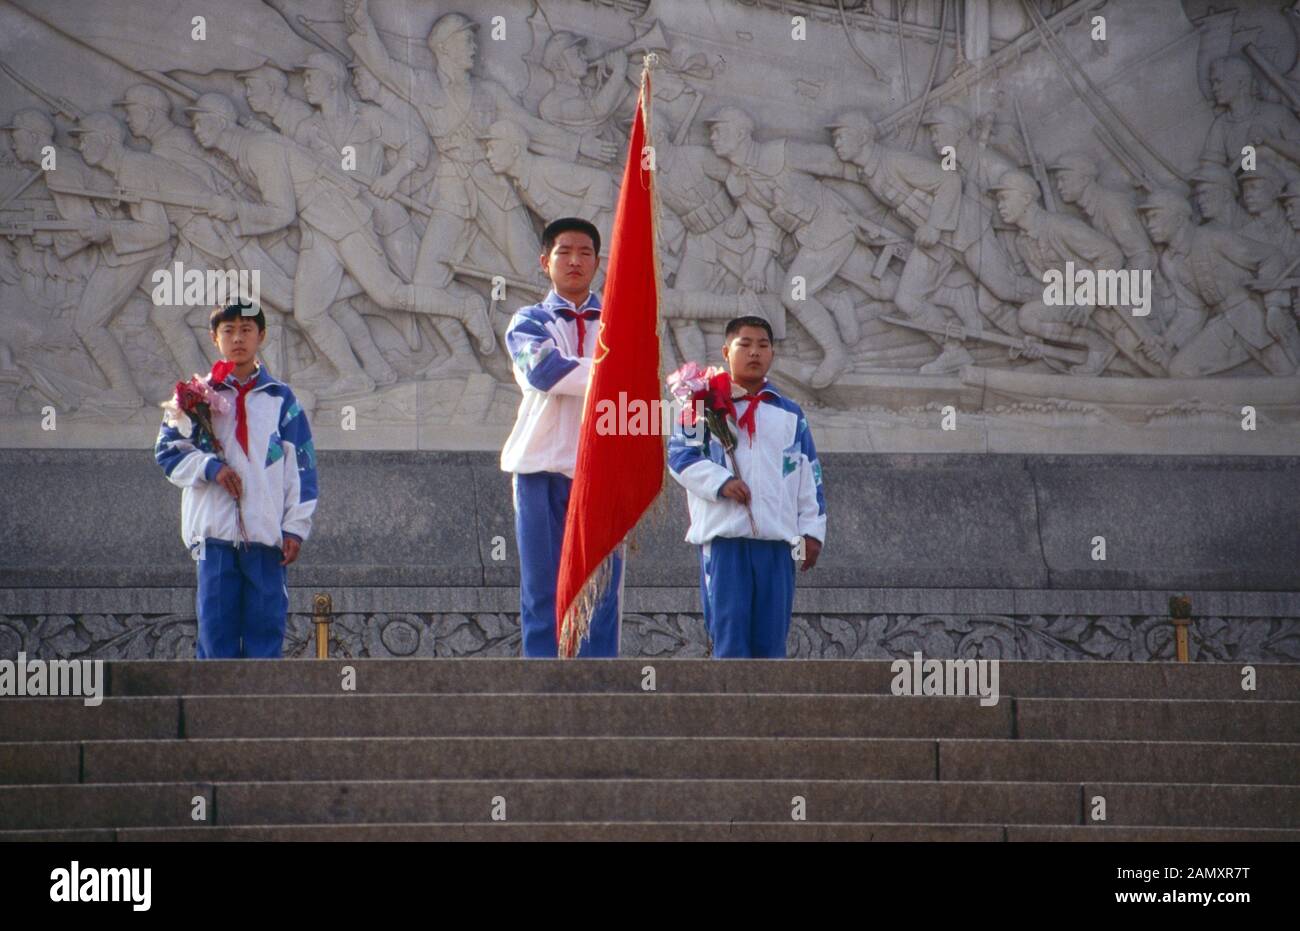 Drei junge Pioniere mit der Staatsflagge auf dem Platz des Himmlischen Friedens in Peking, China um 1990. Three boy scout pioneers with the flag on Tiananmen Square at Beijing, China around 1990. Stock Photo